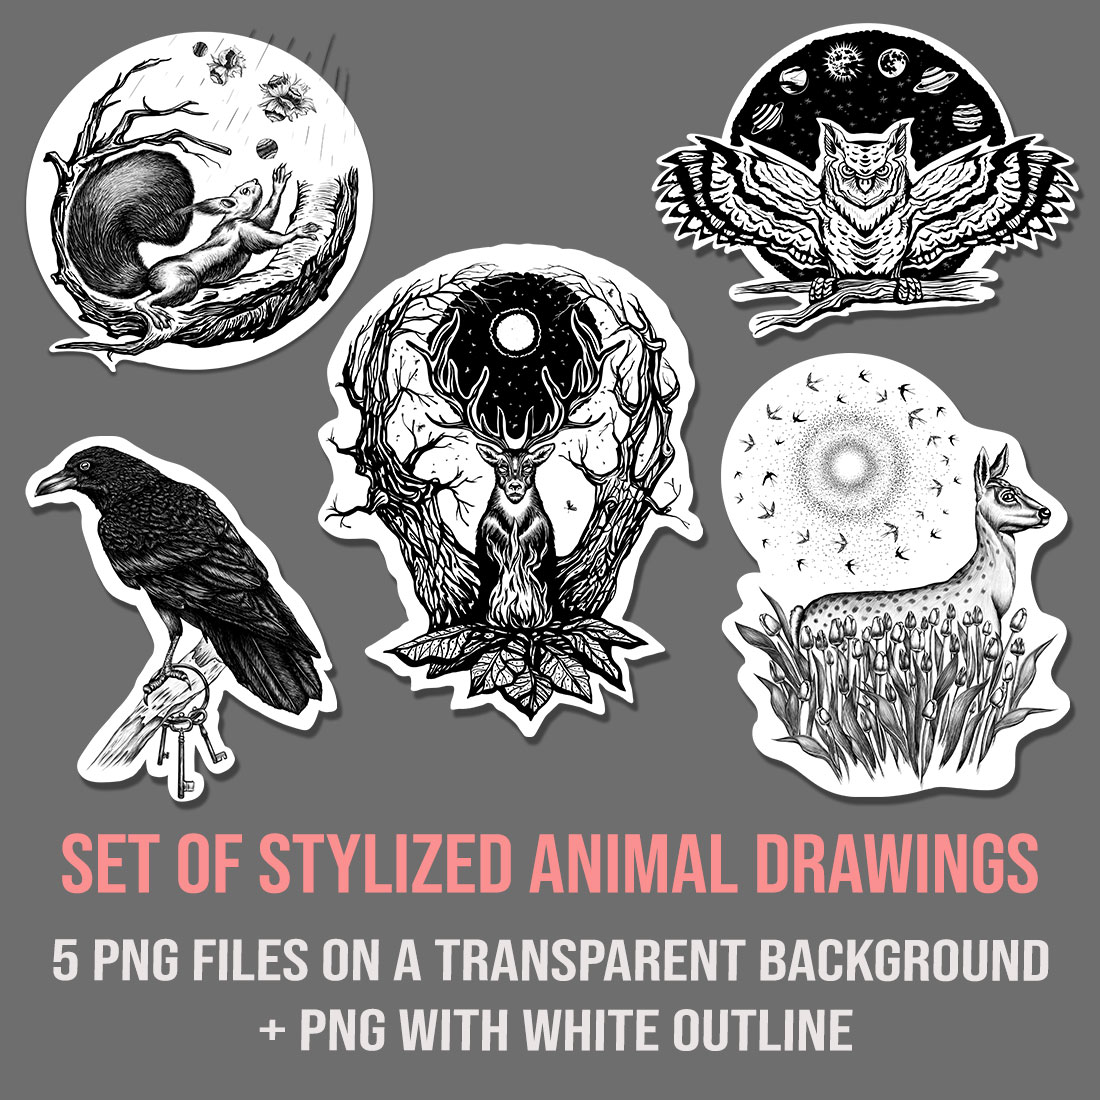 mokup set of stylized animal drawings gray